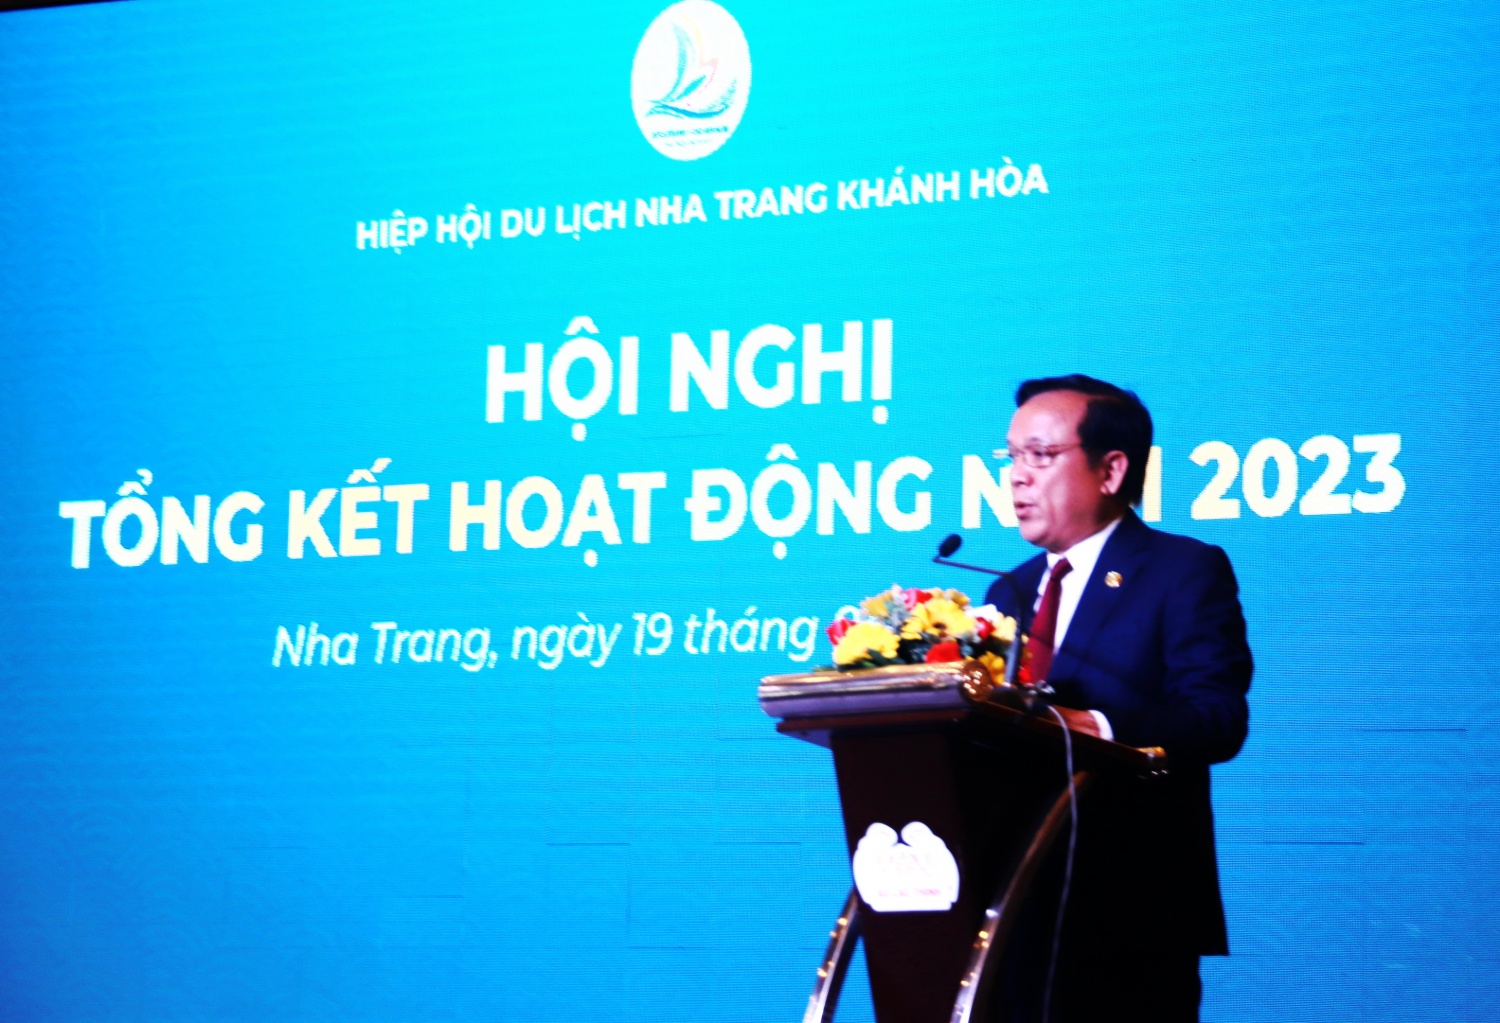 Hiệp hội Du lịch Khánh Hòa tổ chức hội nghị tổng kết năm 2023